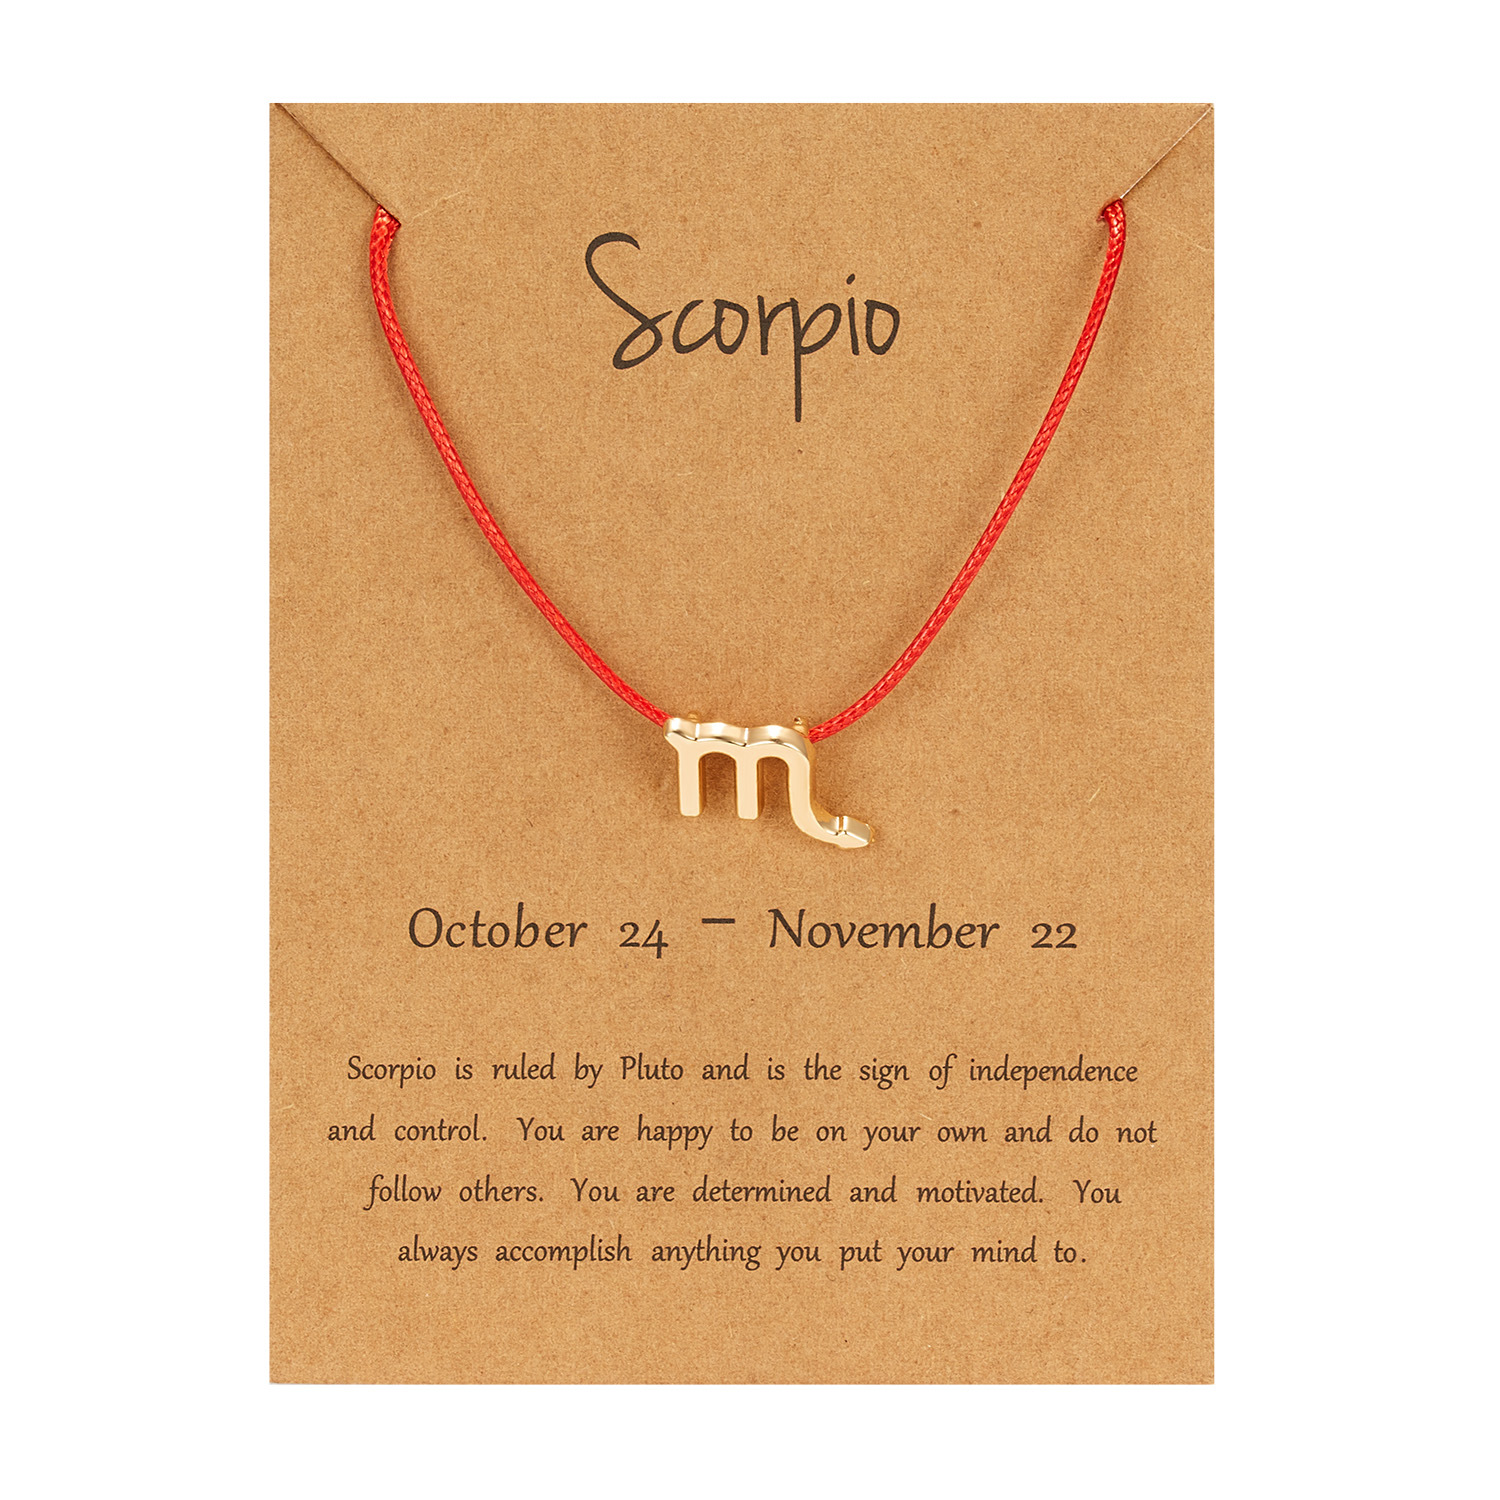 Scorpio(Red Rope)